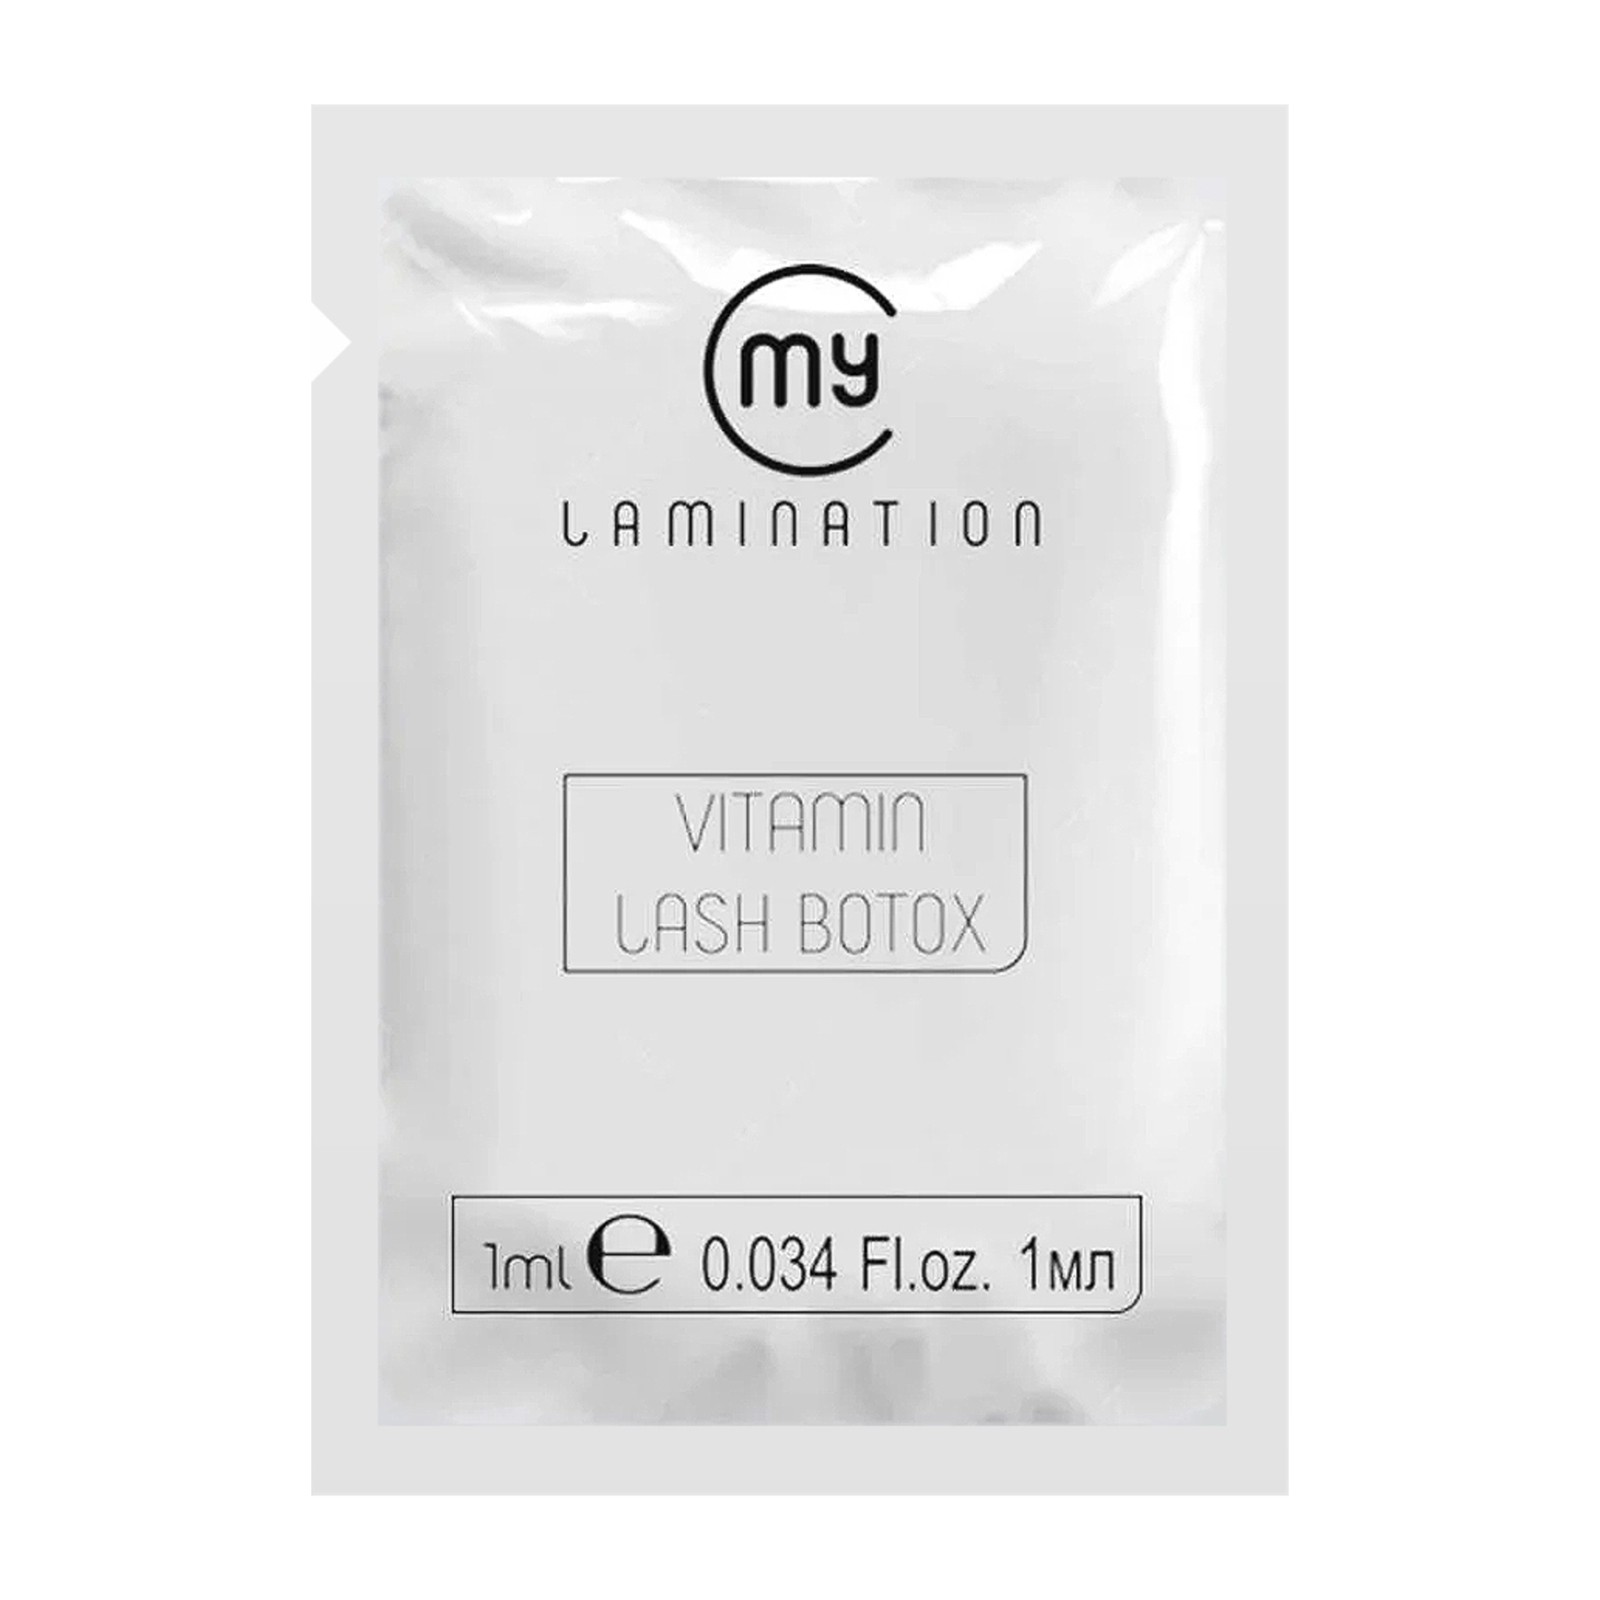 My Lamination - Vitamin Lash Botox - 1ml